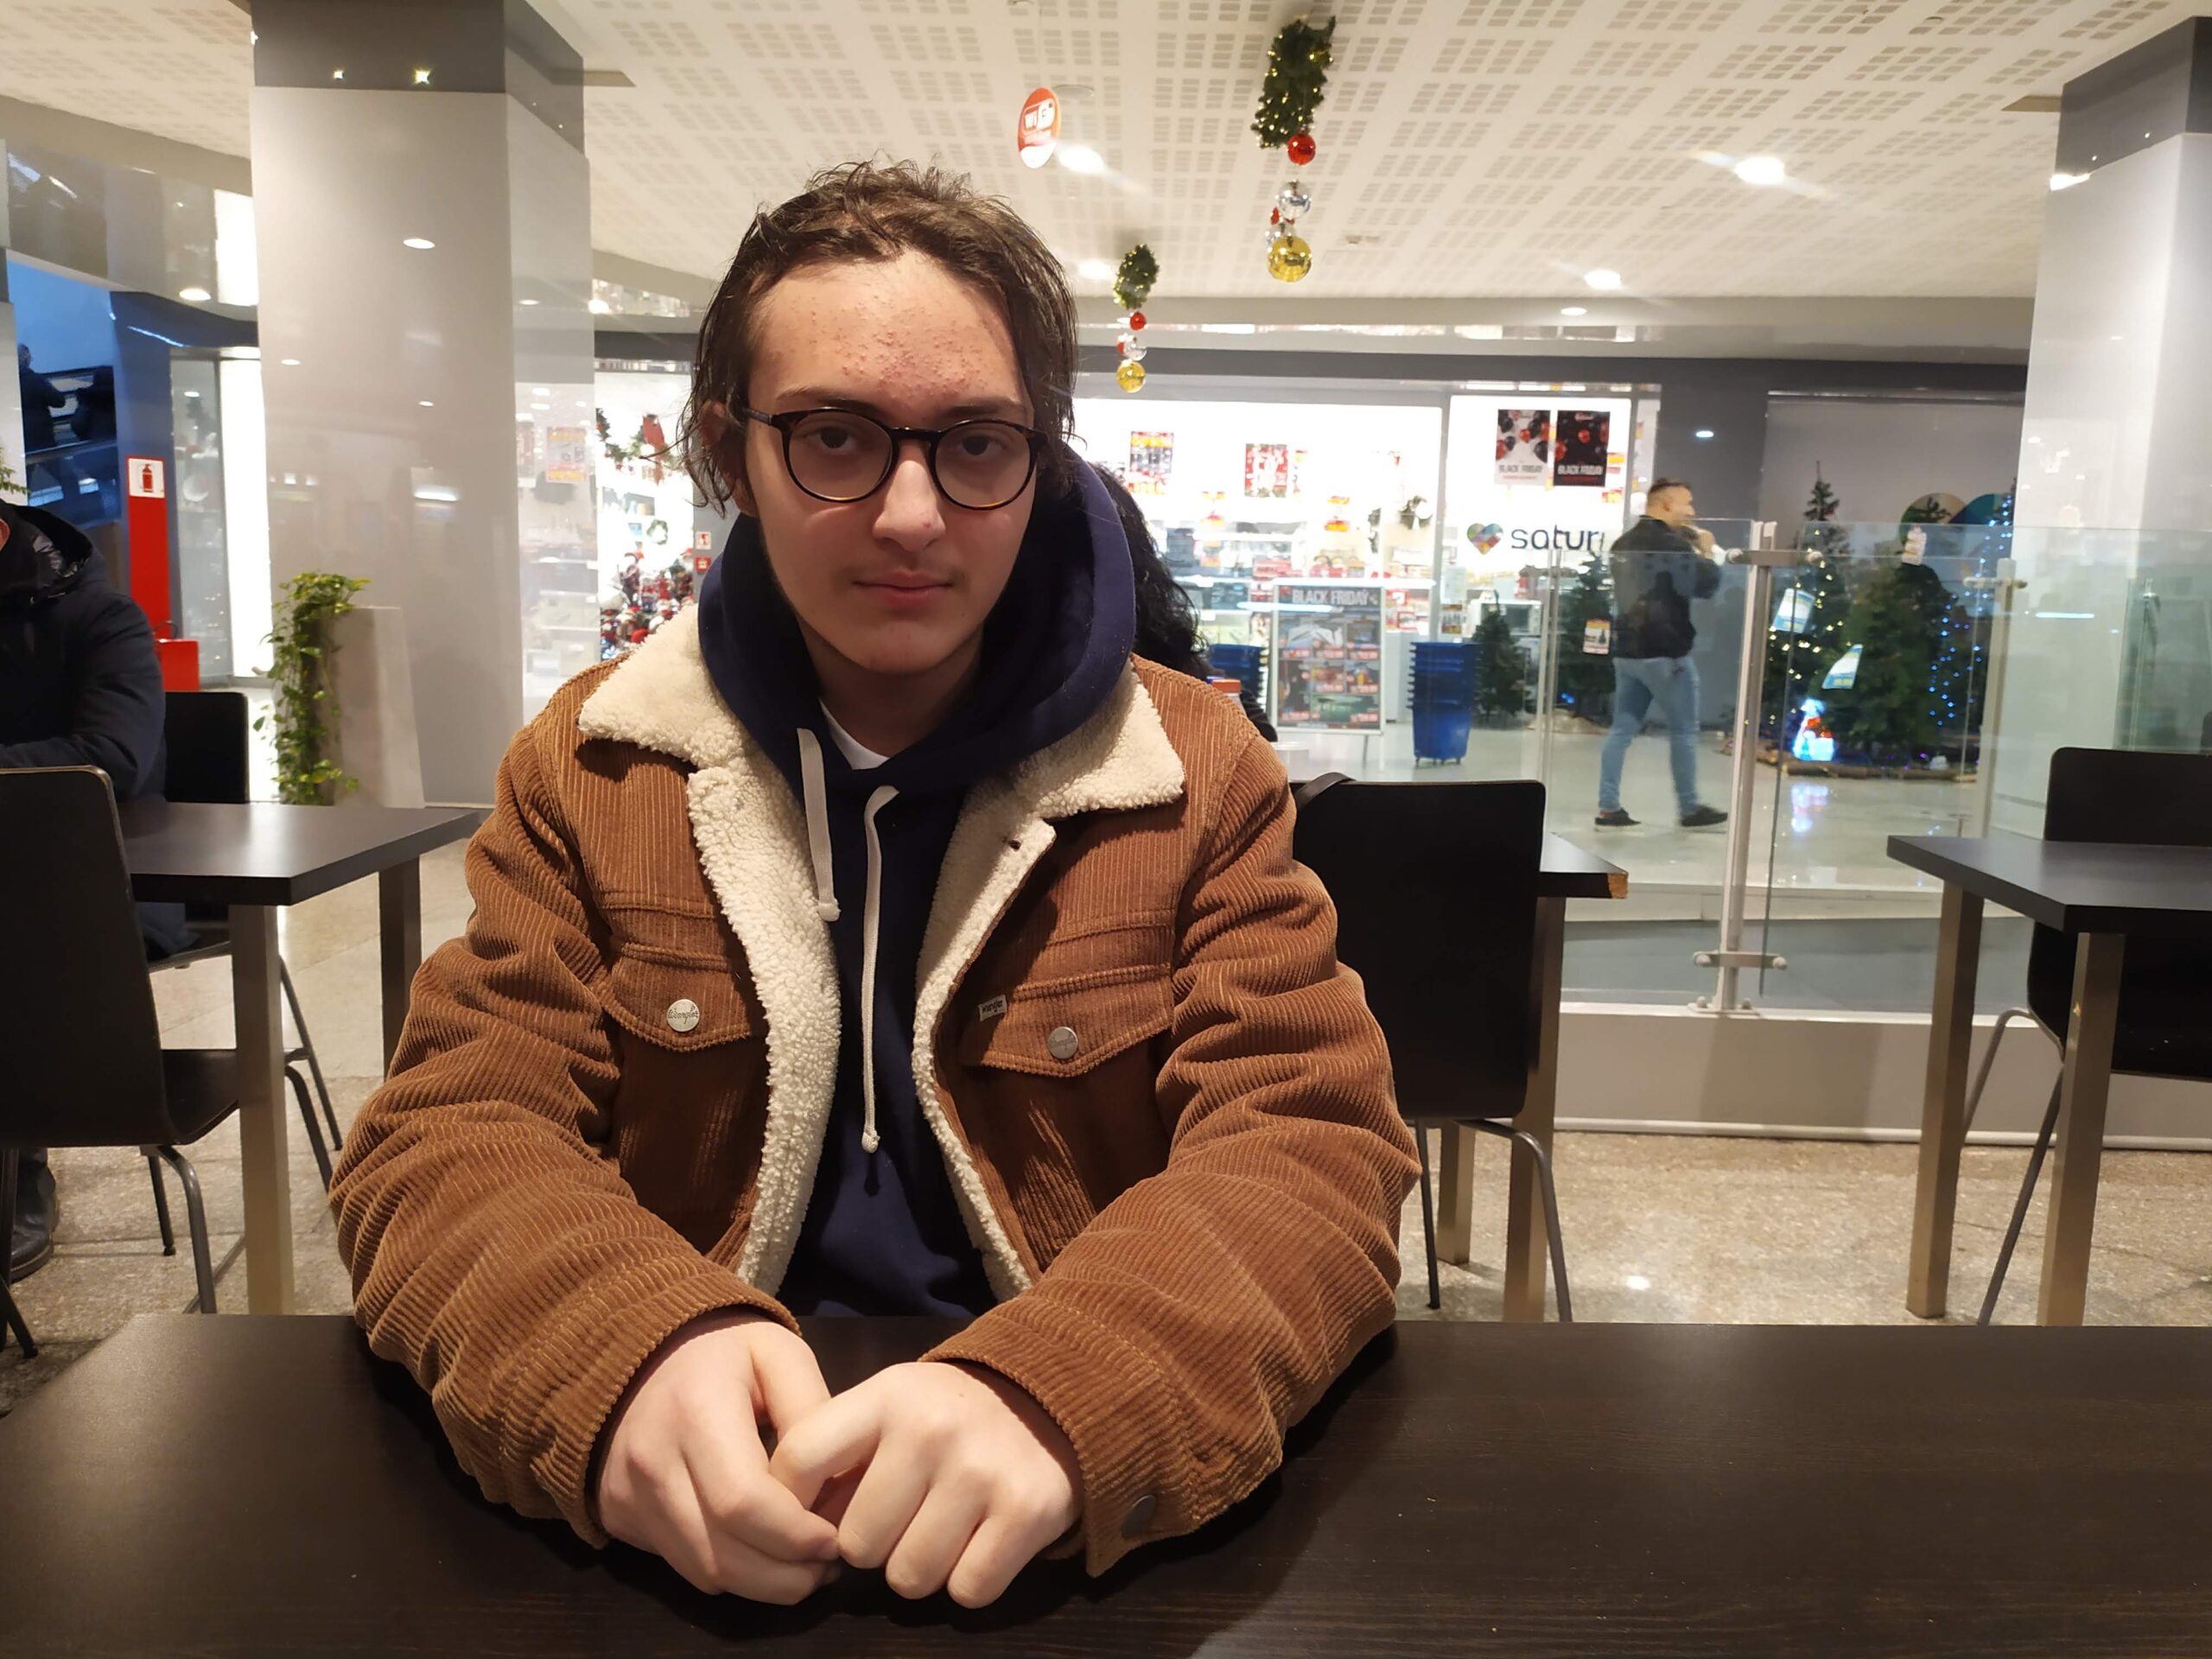 Eugenio at the La Romanina shopping centre